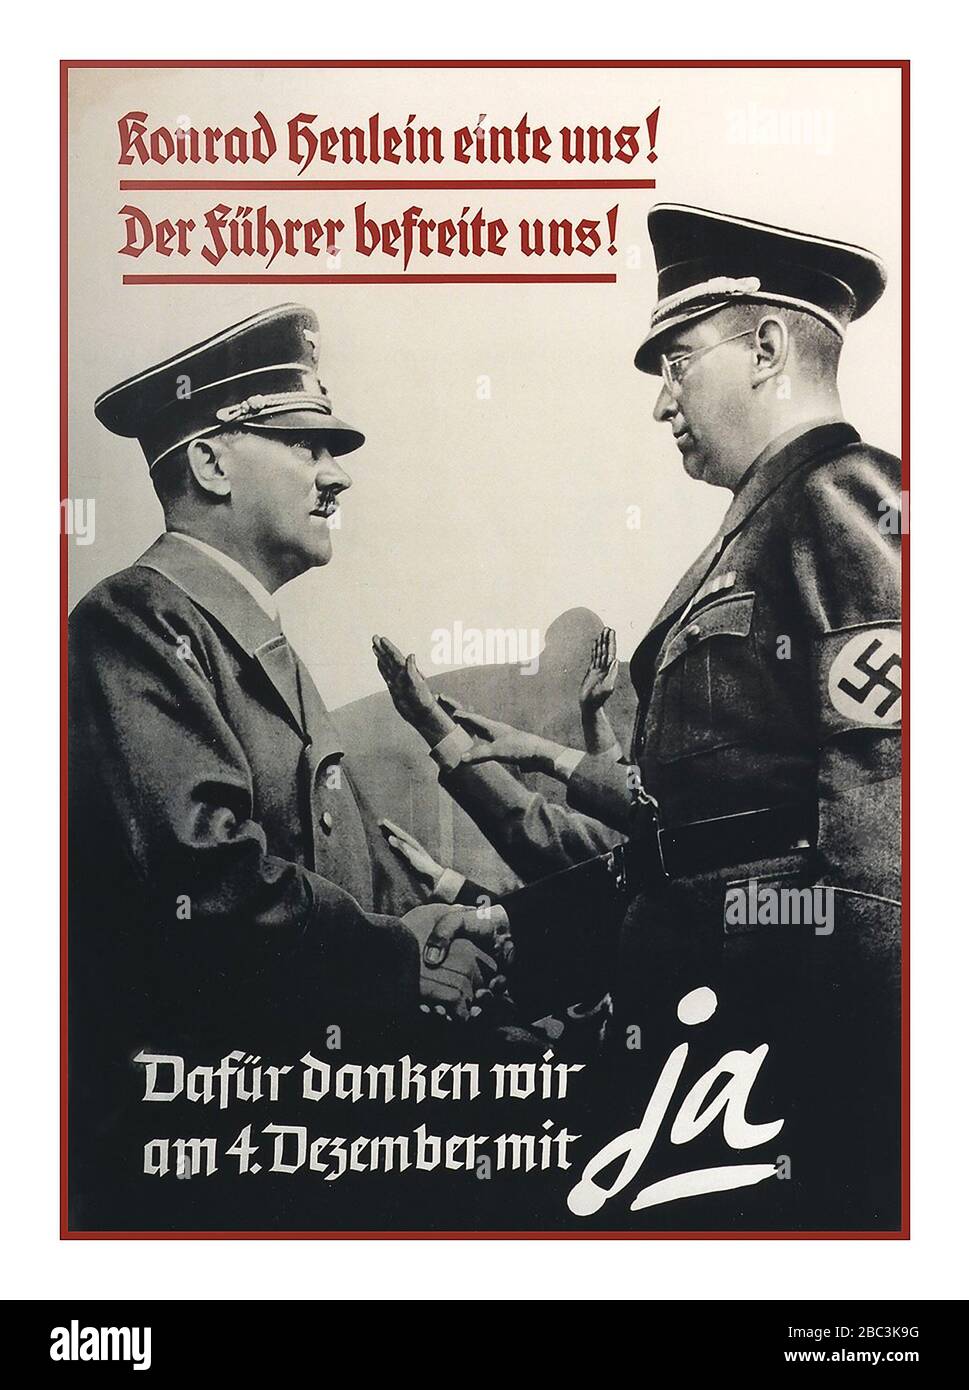 Plakat, das auf die Unterstützung der Annektierung des Sudetenlandes, Tschechoslowakei, 1938 drängt. Der Text. "Konrad Henlein hat uns vereint! Der Führer hat uns befreit! Lassen Sie uns unsere Dankbarkeit am 4. Dezember mit einem Ja zeigen." Stockfoto